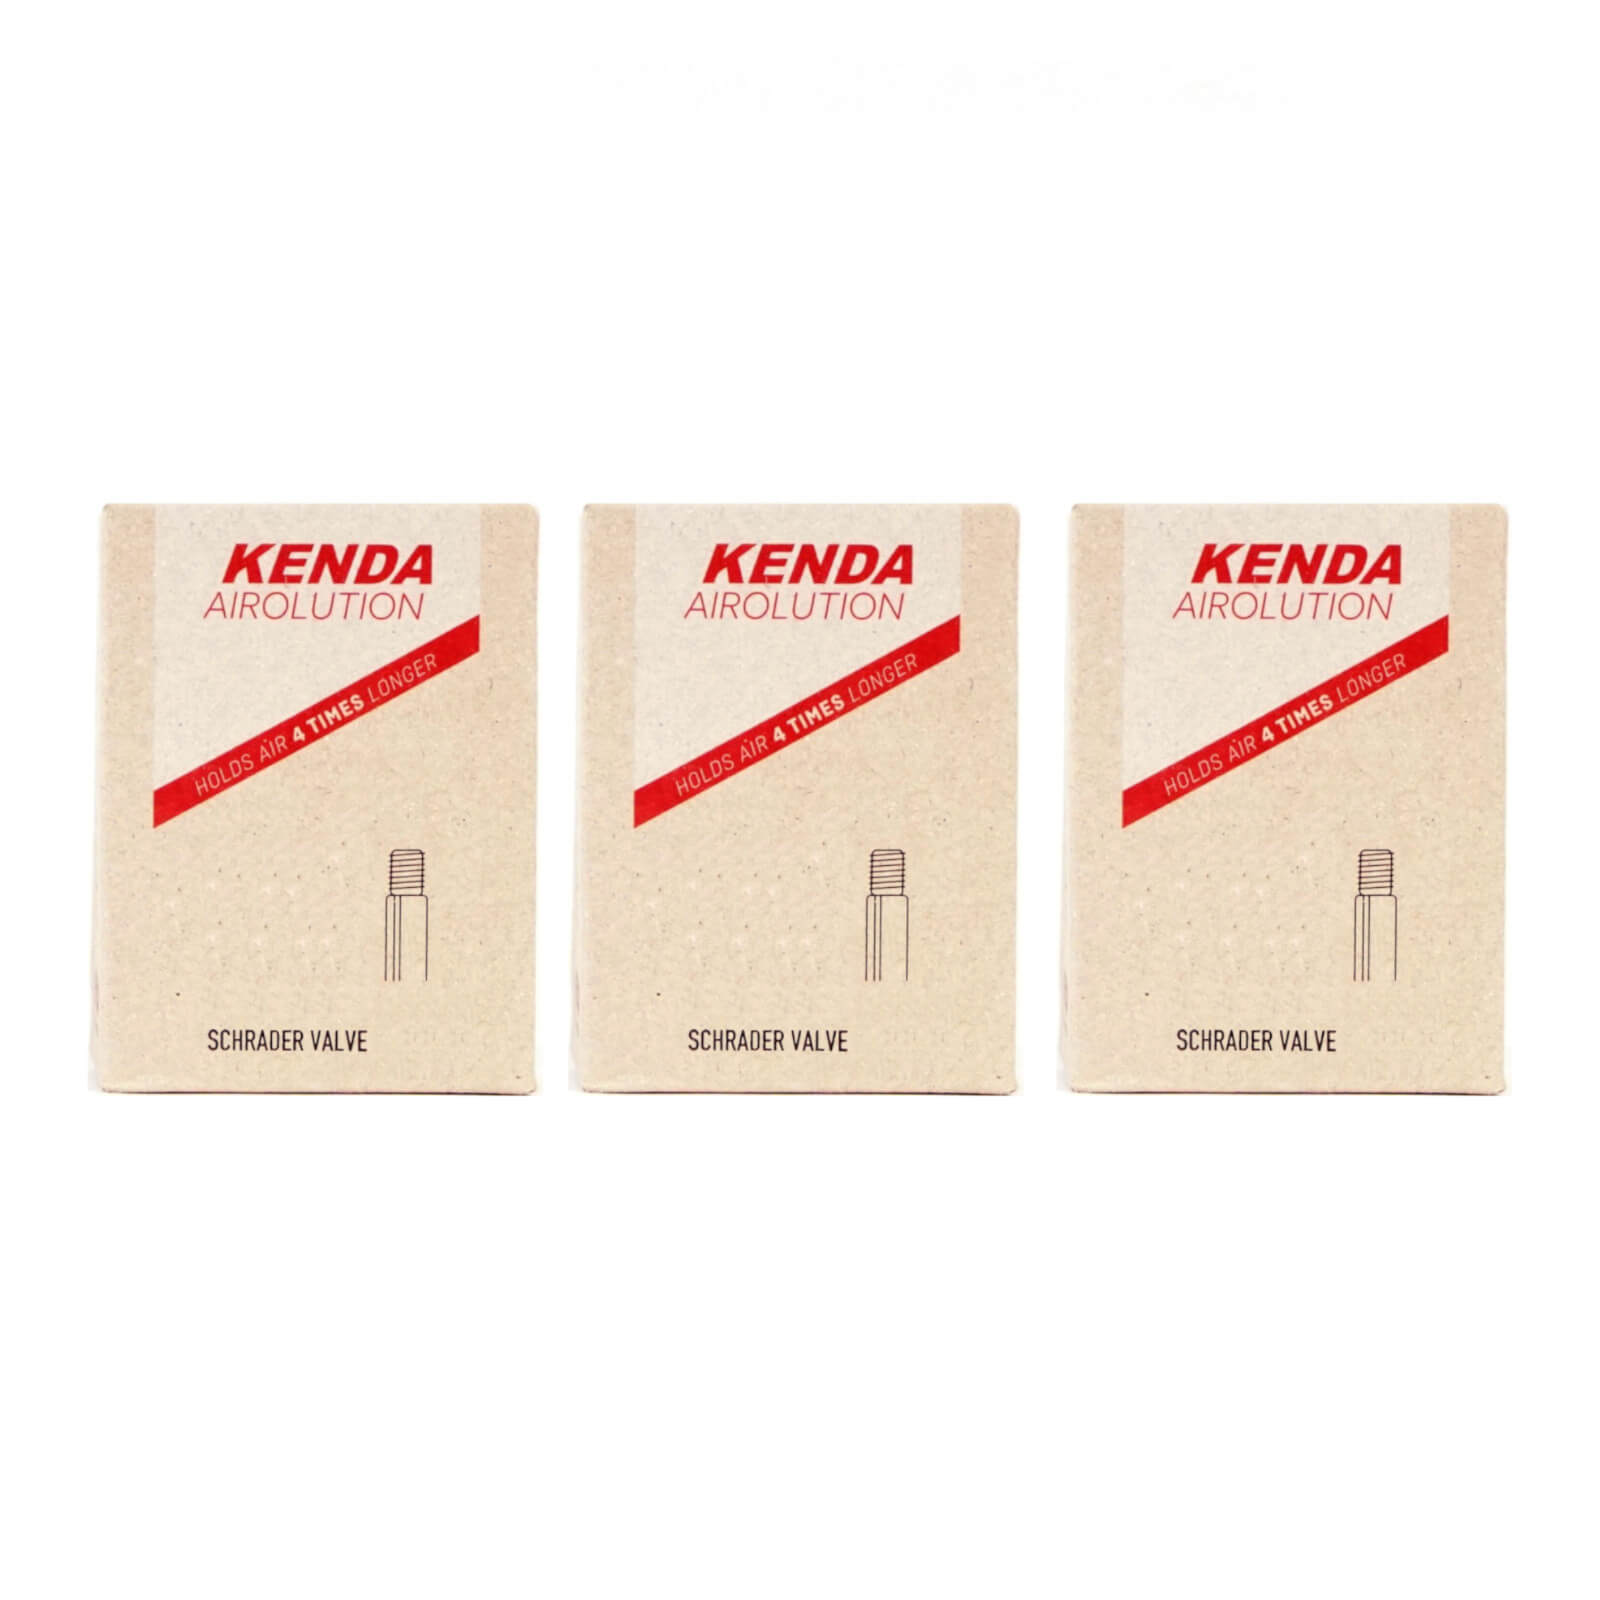 Kenda Airolution 16x1.5-2.25" 16 Inch Schrader Valve Bike Inner Tube Pack of 3